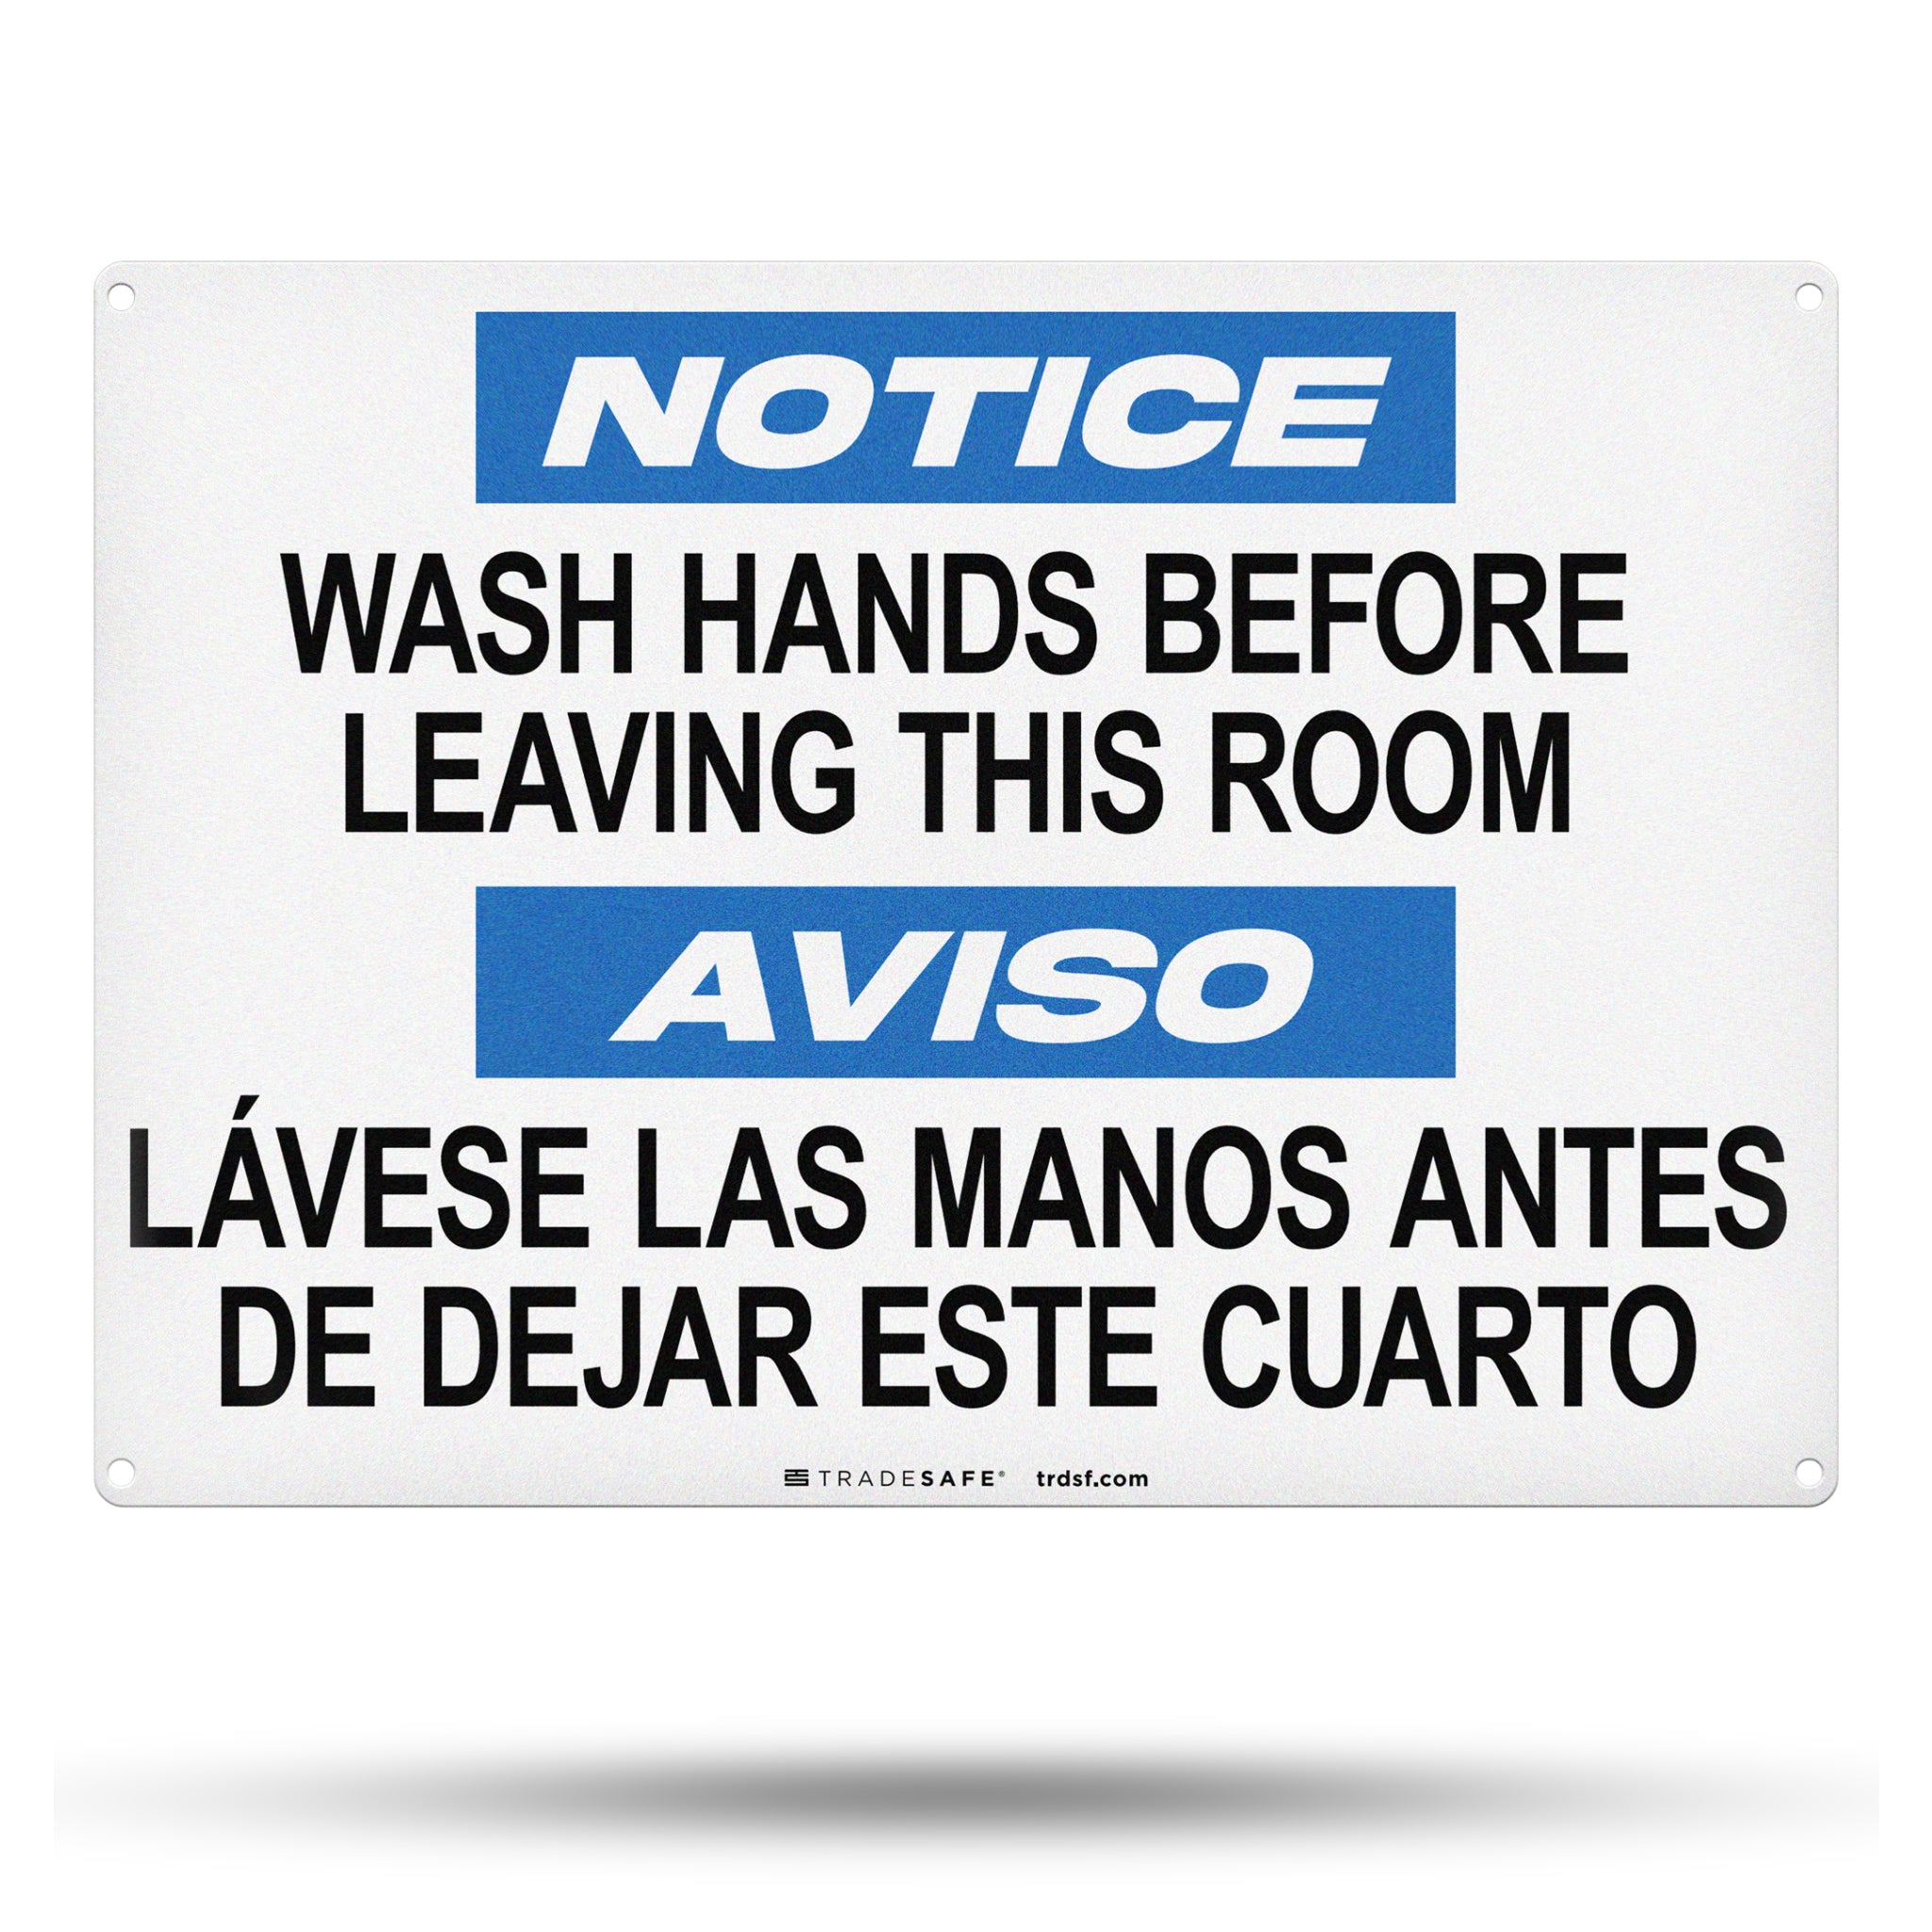 Wash Hands Before Leaving This Room, Lávese Las Manos Antes De Dejar Este Cuarto Aluminum Sign